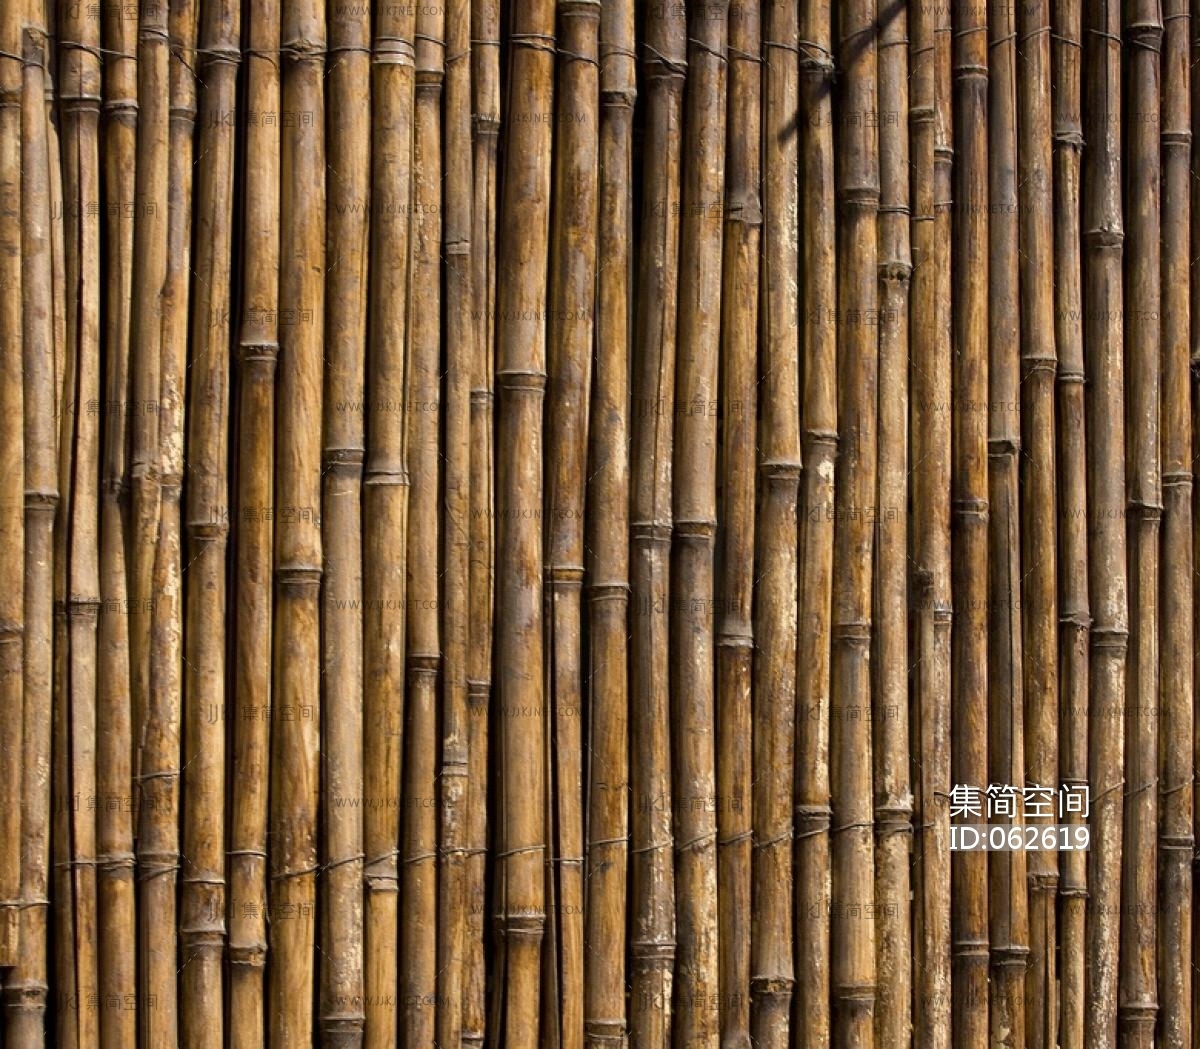 仿真竹子假竹子人造景观竹酒店庭院室内外隔断屏风挡墙细水竹子-阿里巴巴